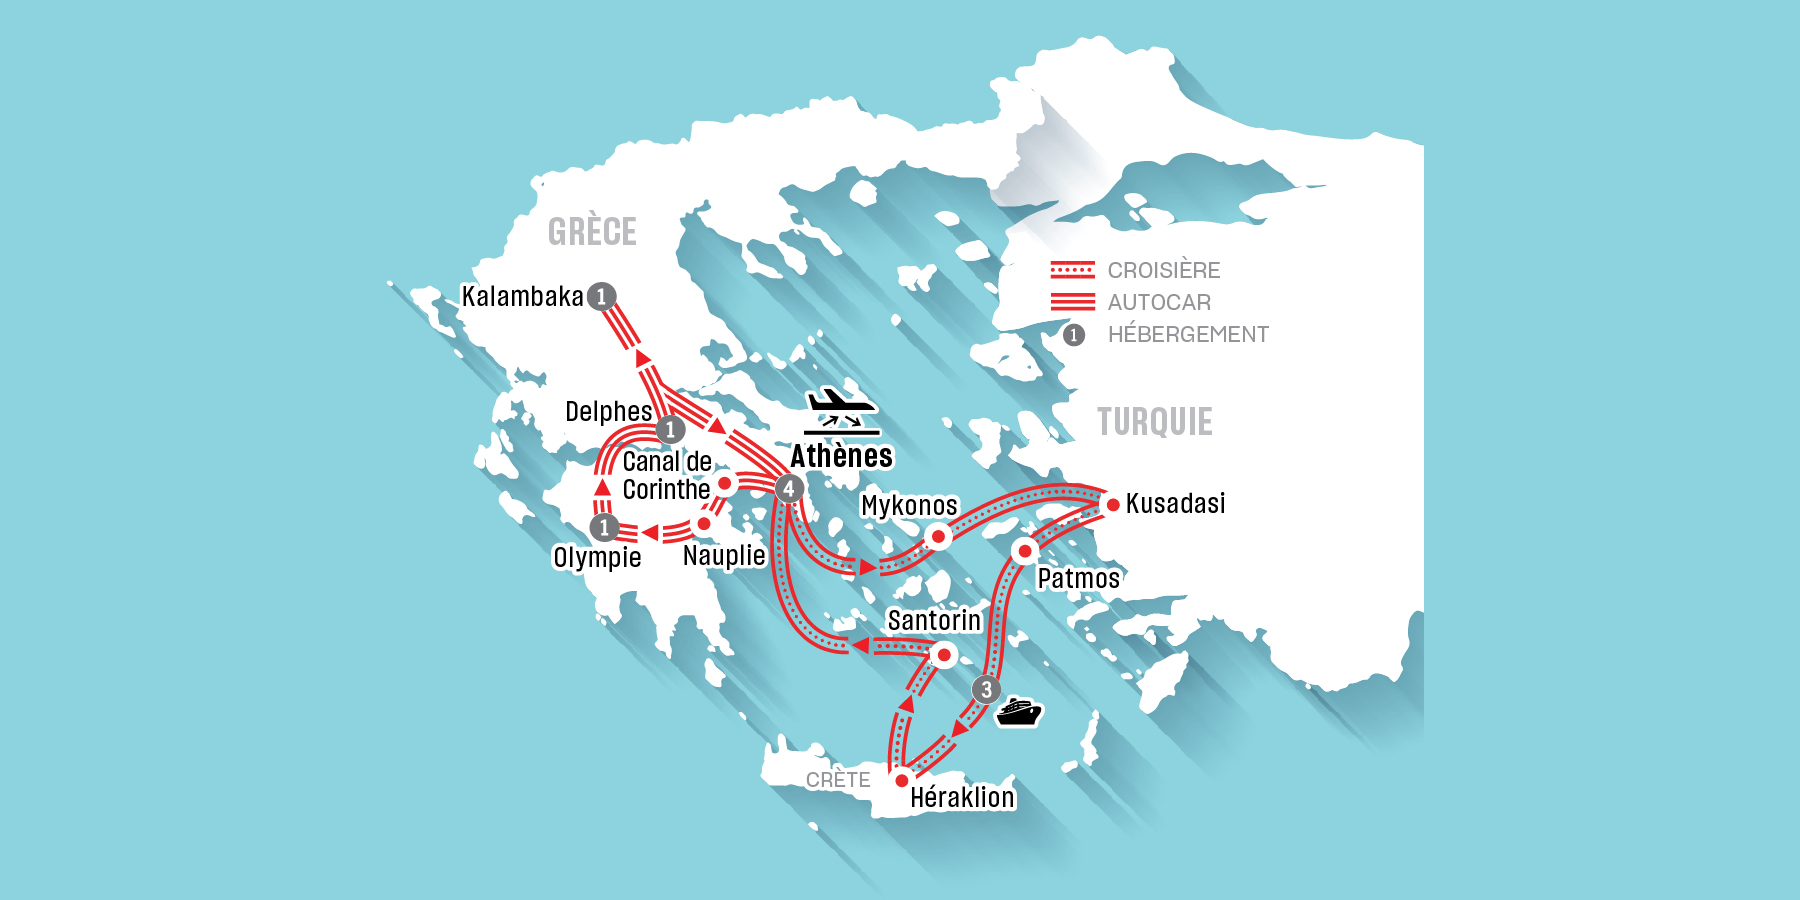 La Grèce classique et croisière